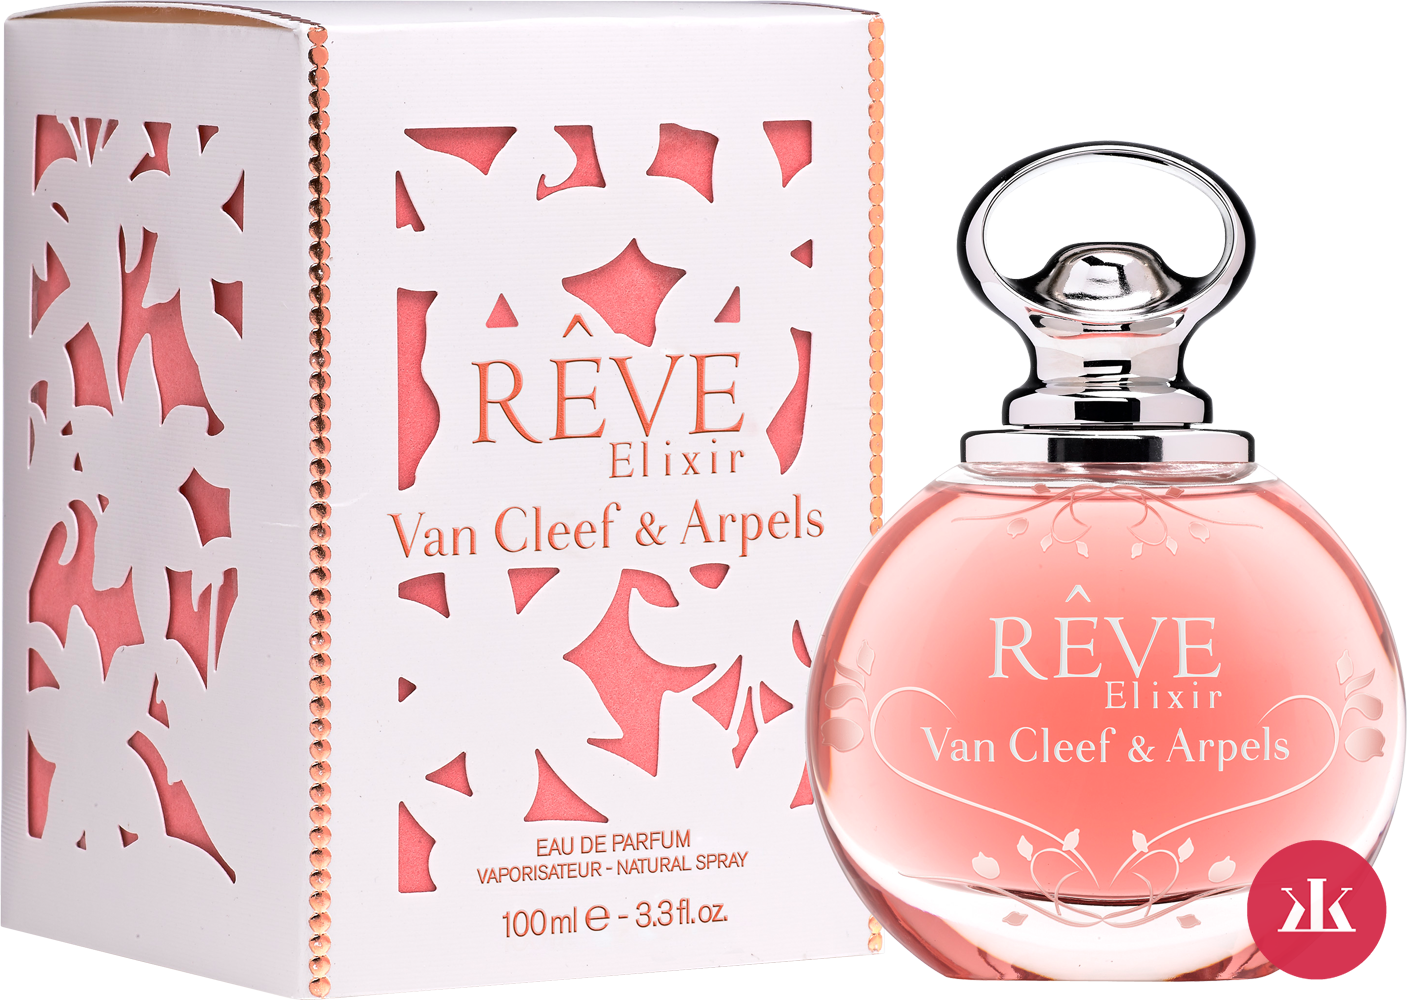 Van Cleef & Arpels Rêve Elixir